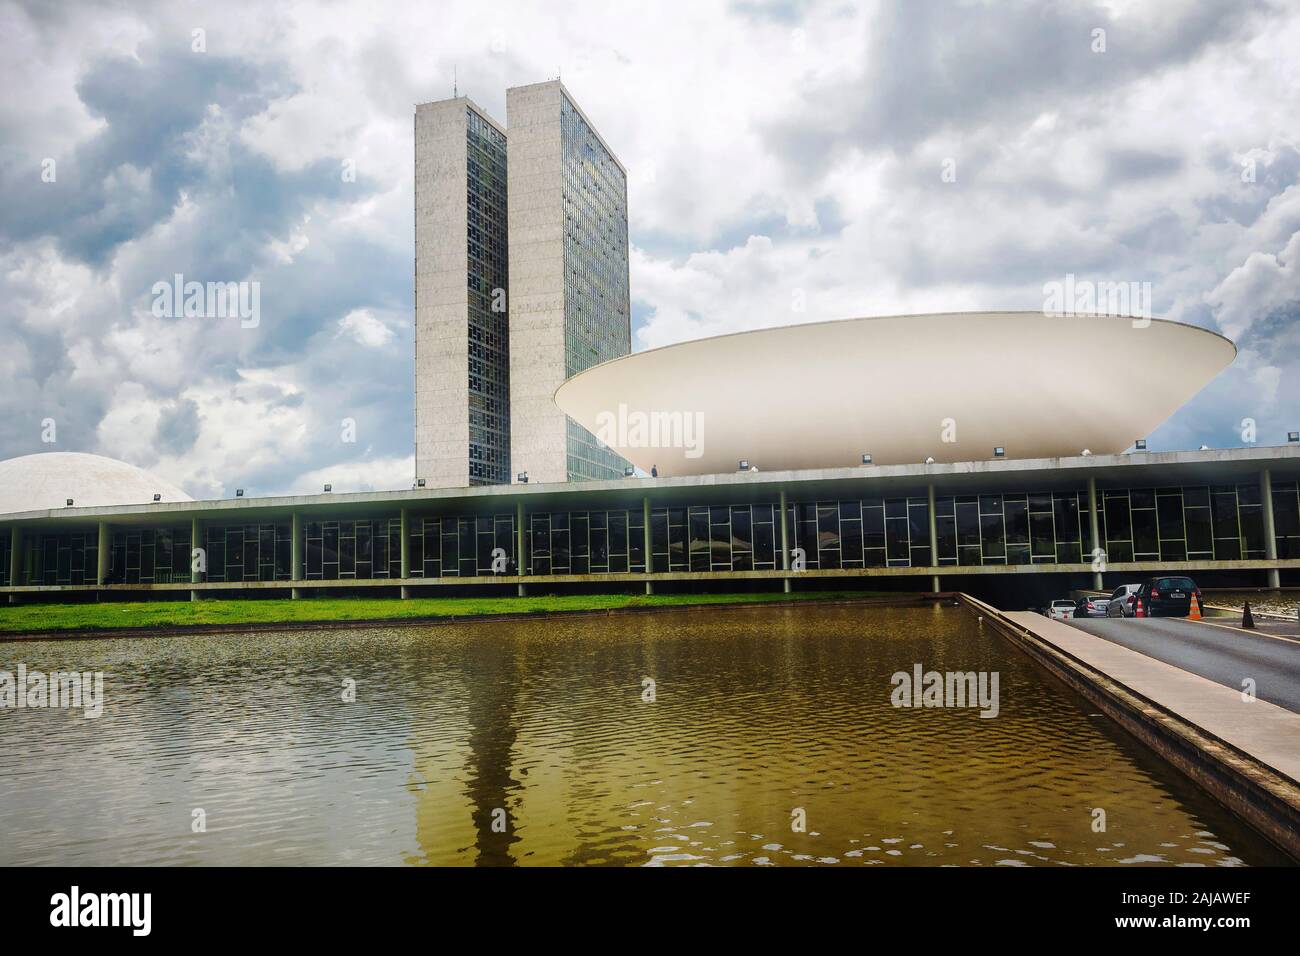 Brasilia, Brasil - Noviembre 20, 2015: Vista del edificio del Congreso Nacional brasileño, el órgano legislativo del gobierno federal de Brasil, en Brasilia, Foto de stock